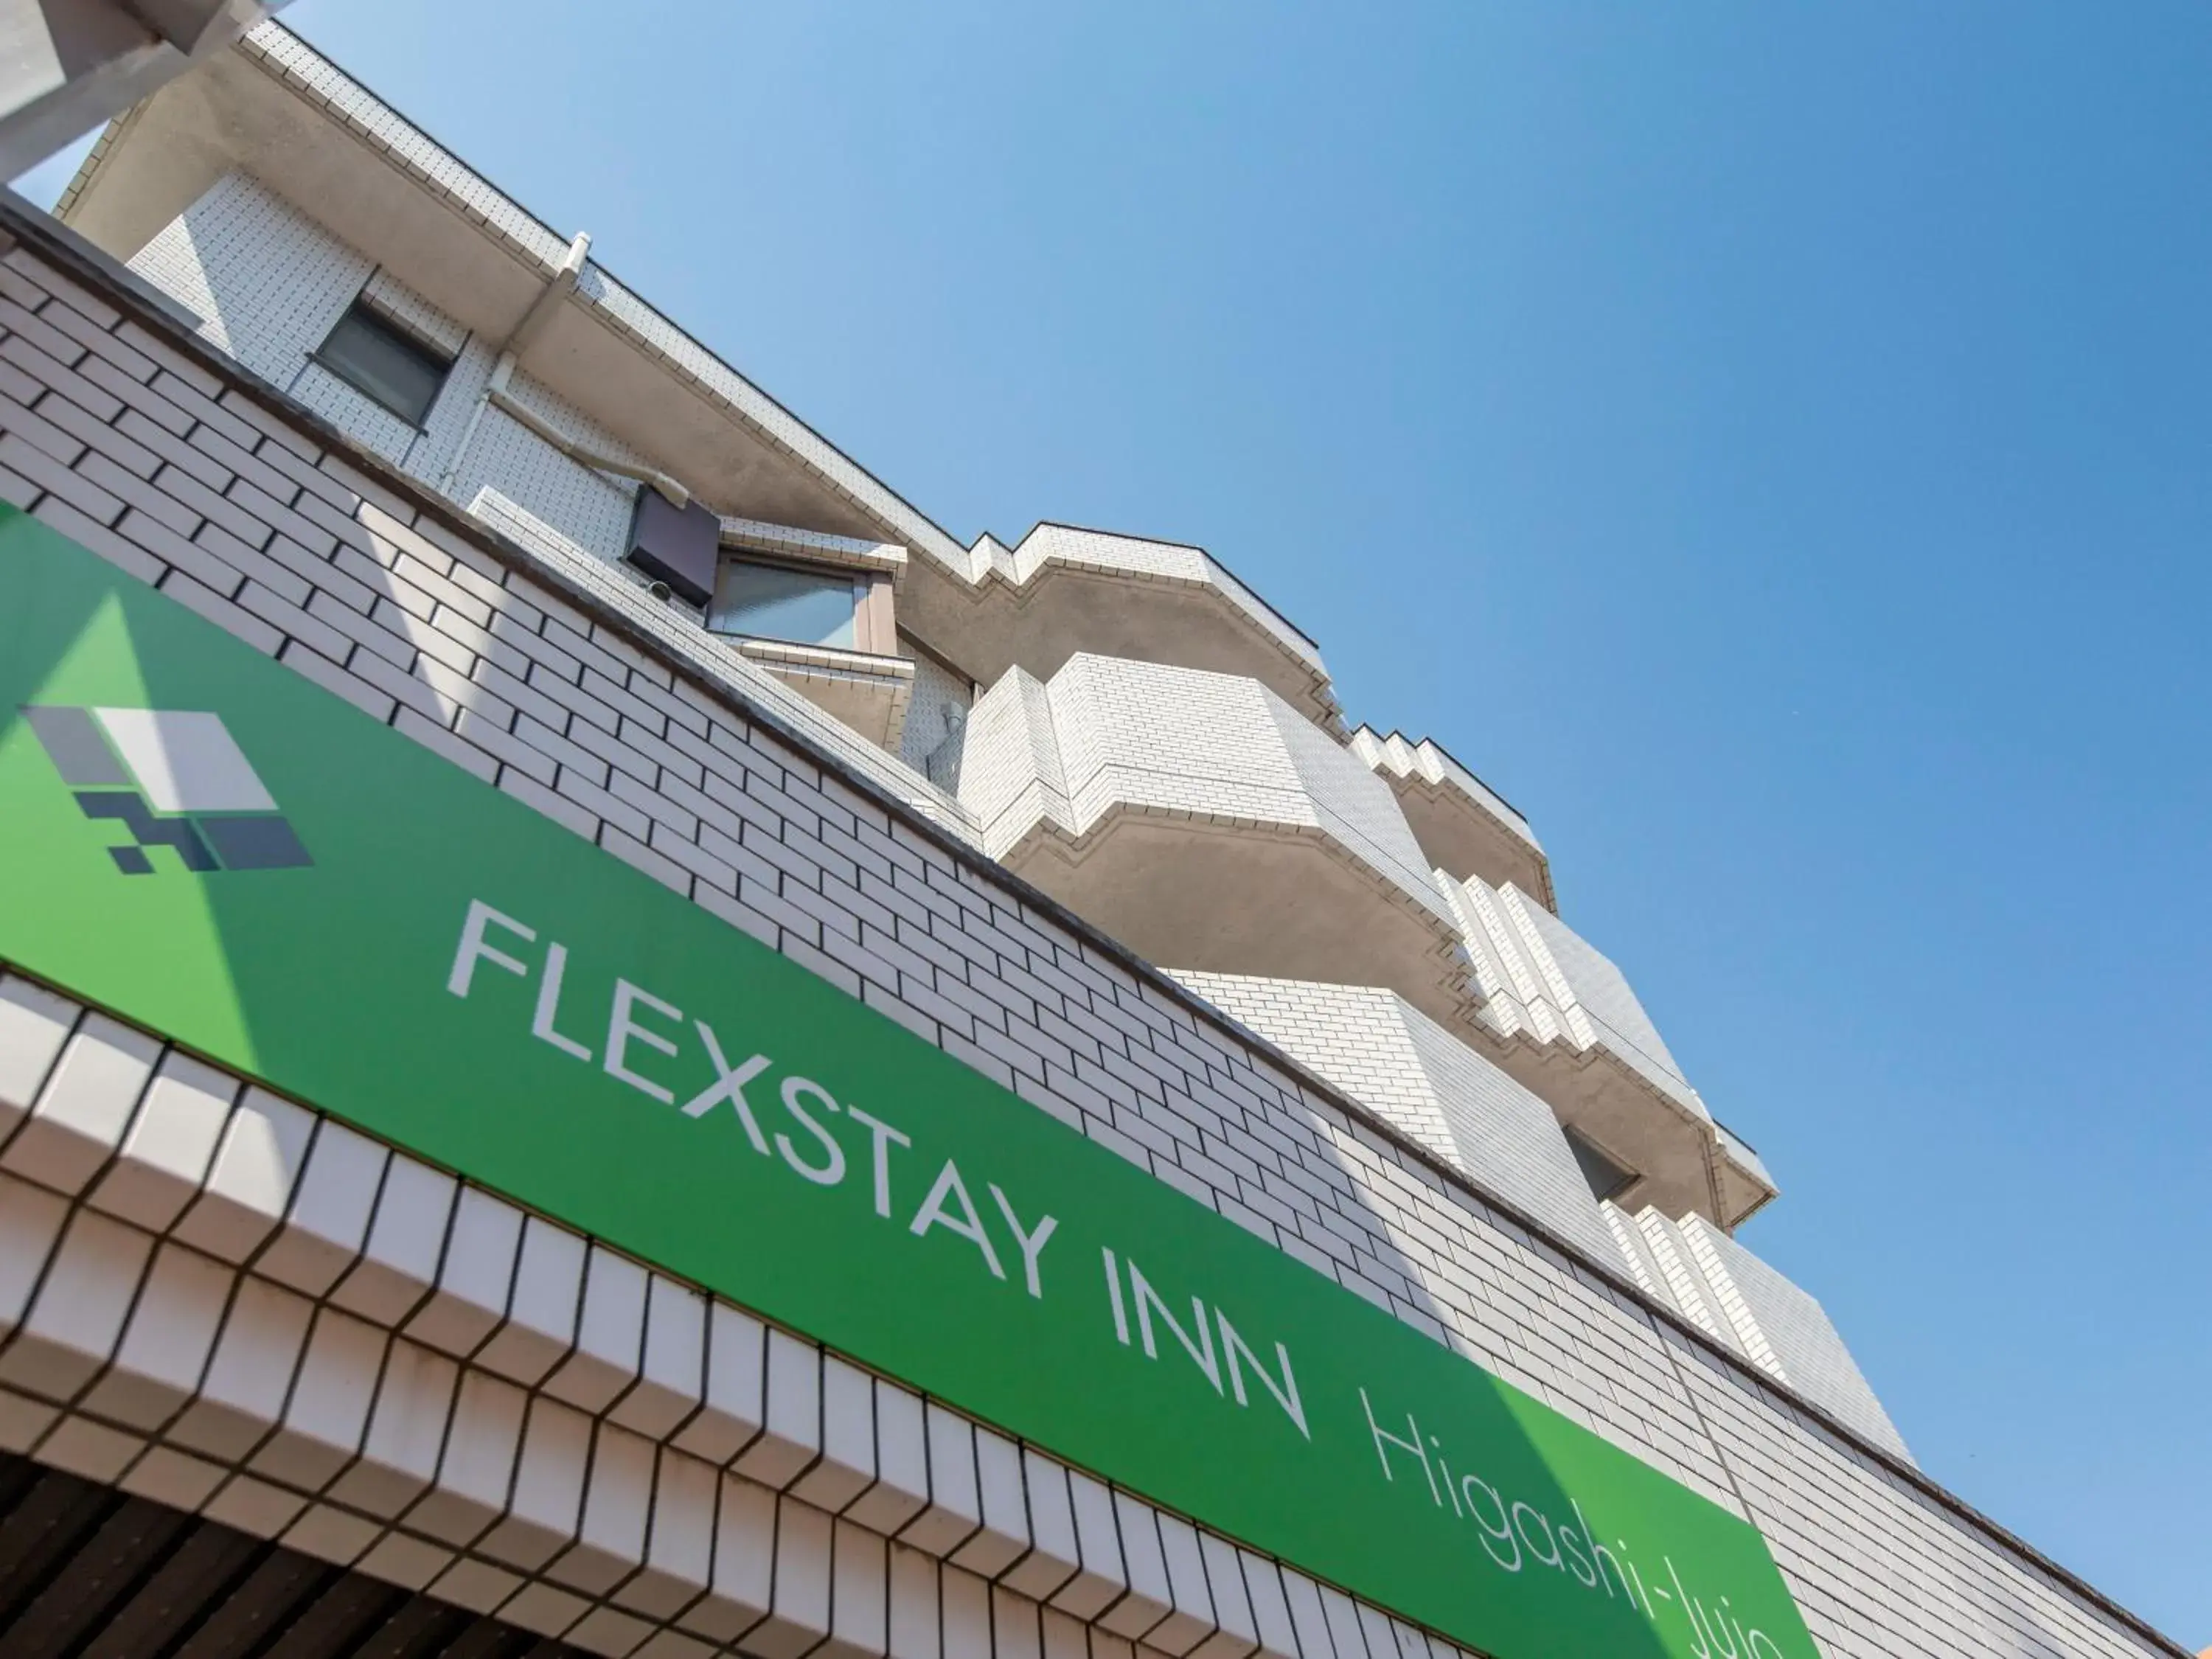 Property building in Flexstay Inn Higashi-Jujo